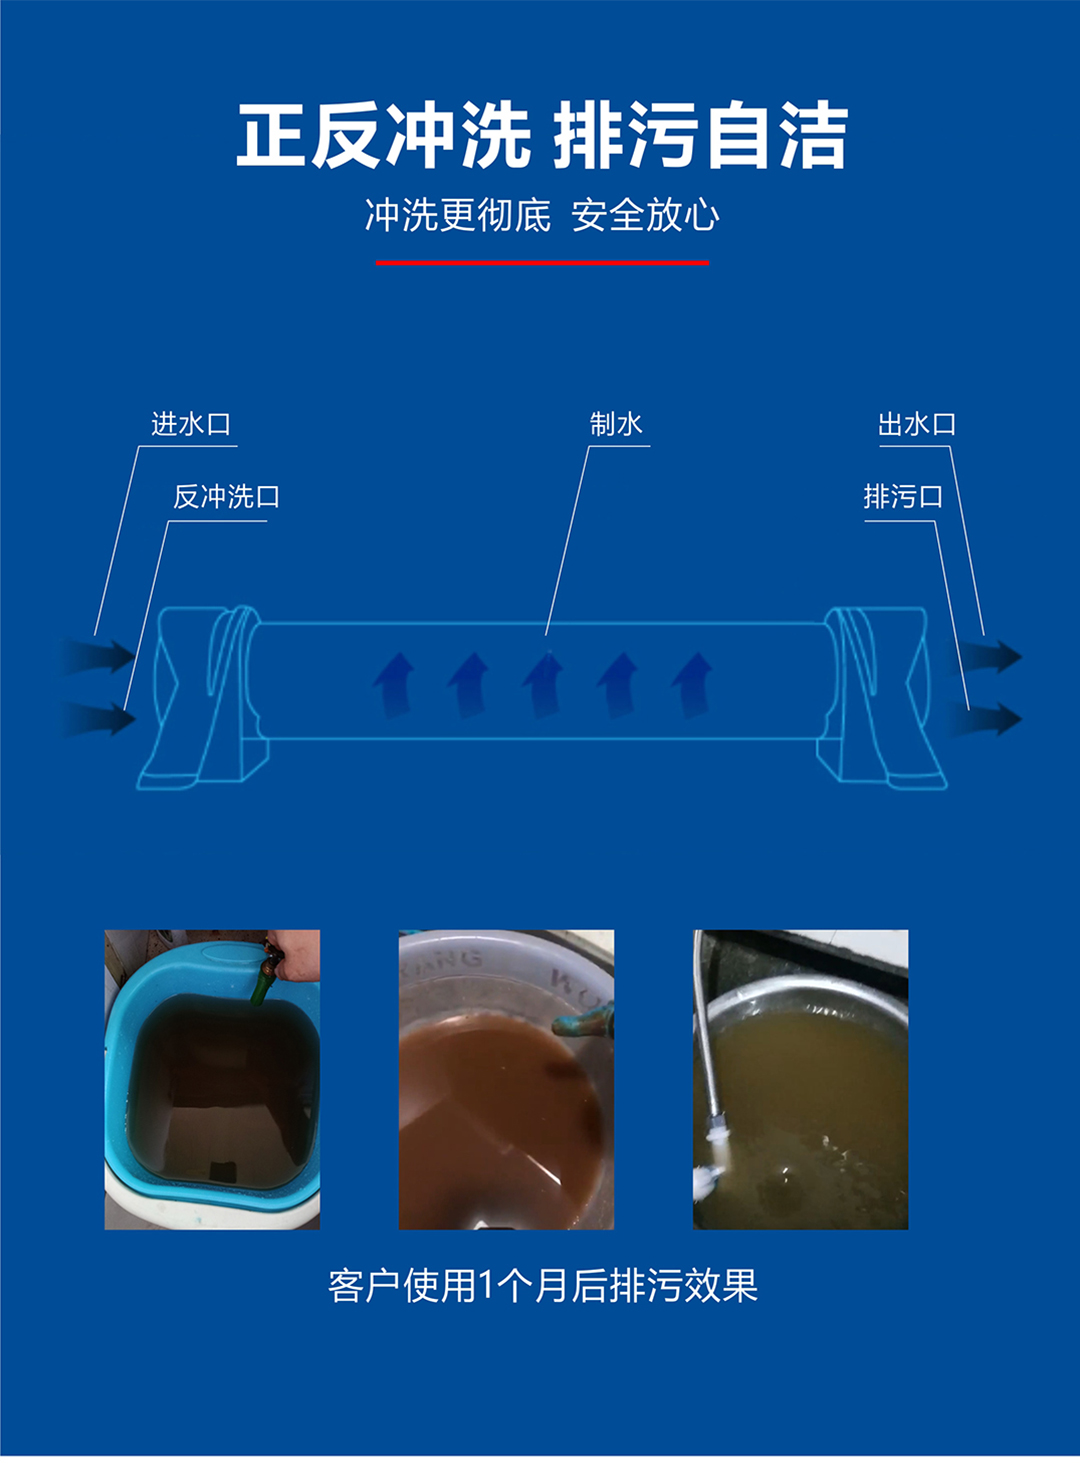 戴安全屋超滤净水机(图7)